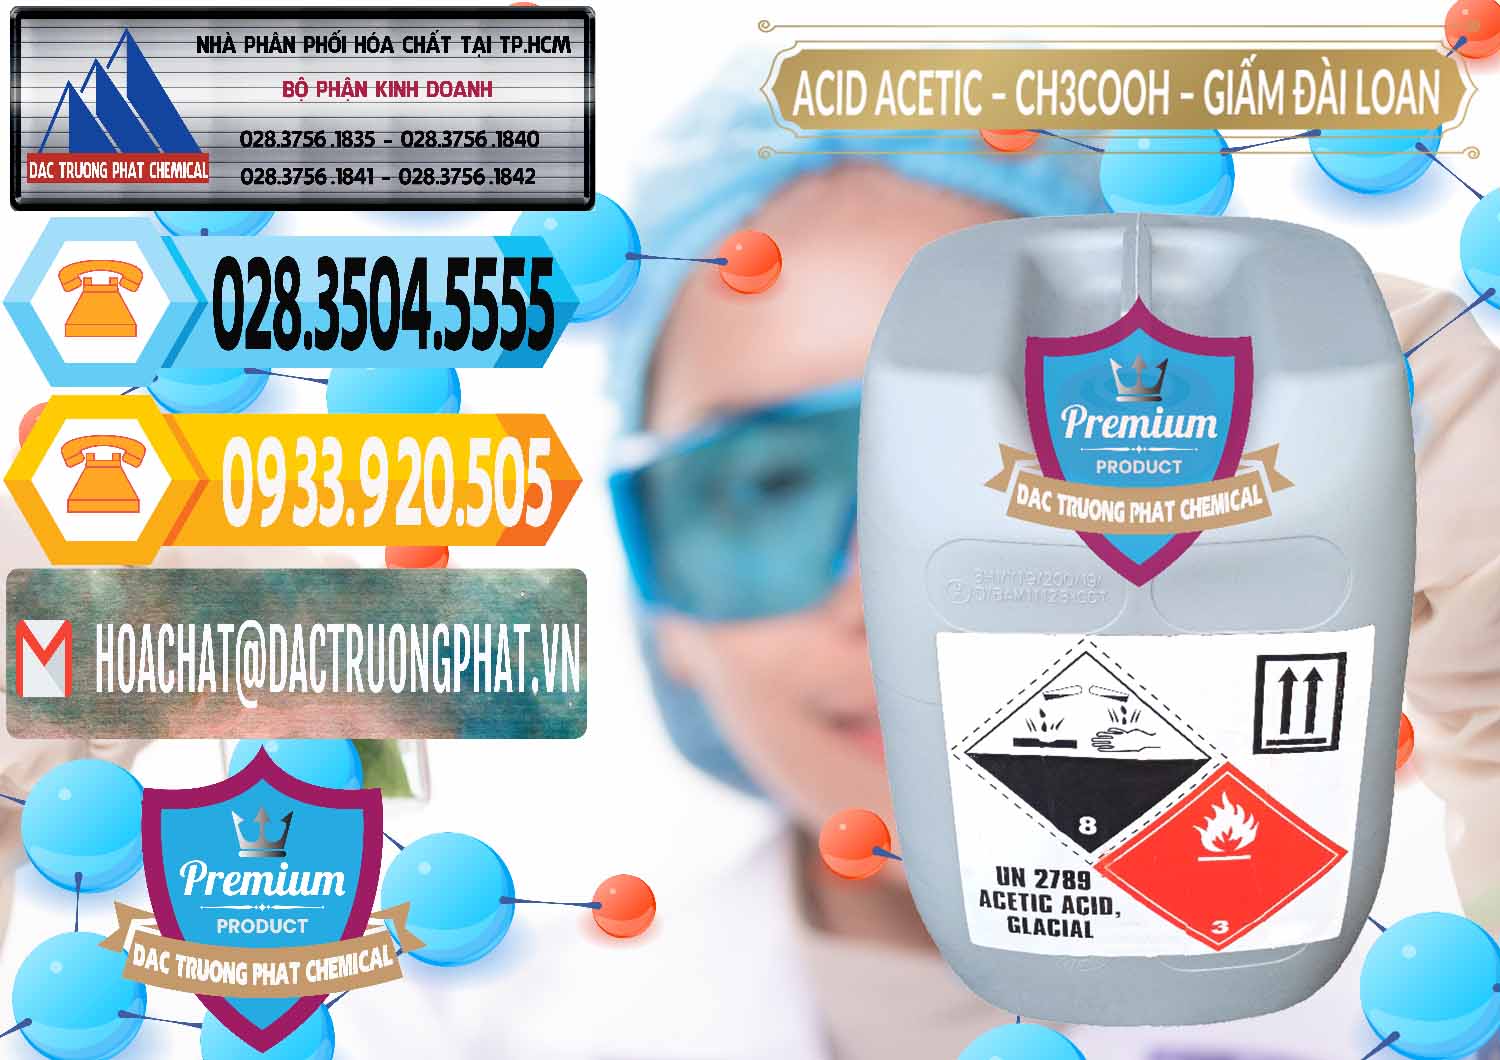 Chuyên bán ( cung cấp ) Acetic Acid – Axit Acetic Chang Chun Đài Loan Taiwan - 0001 - Cty kinh doanh và cung cấp hóa chất tại TP.HCM - hoachattayrua.net